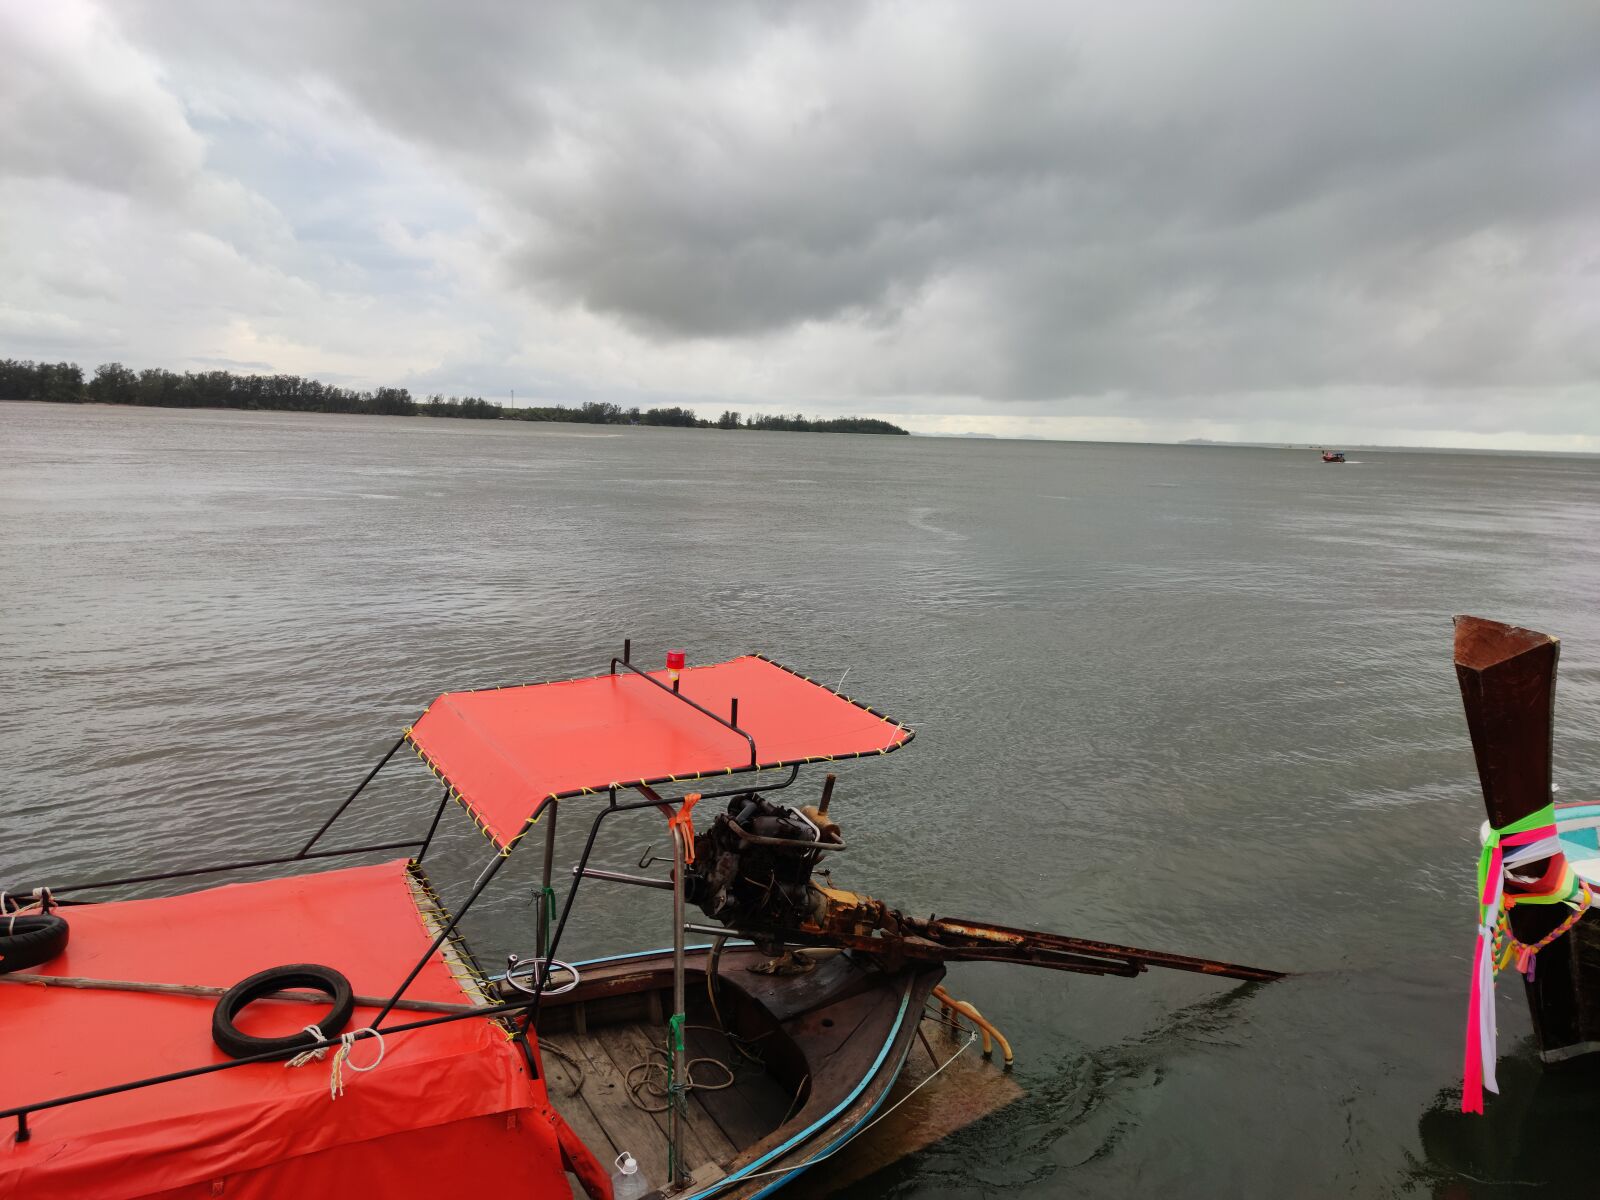 Xiaomi Mi Note 10 sample photo. Sea, boat, landscape photography